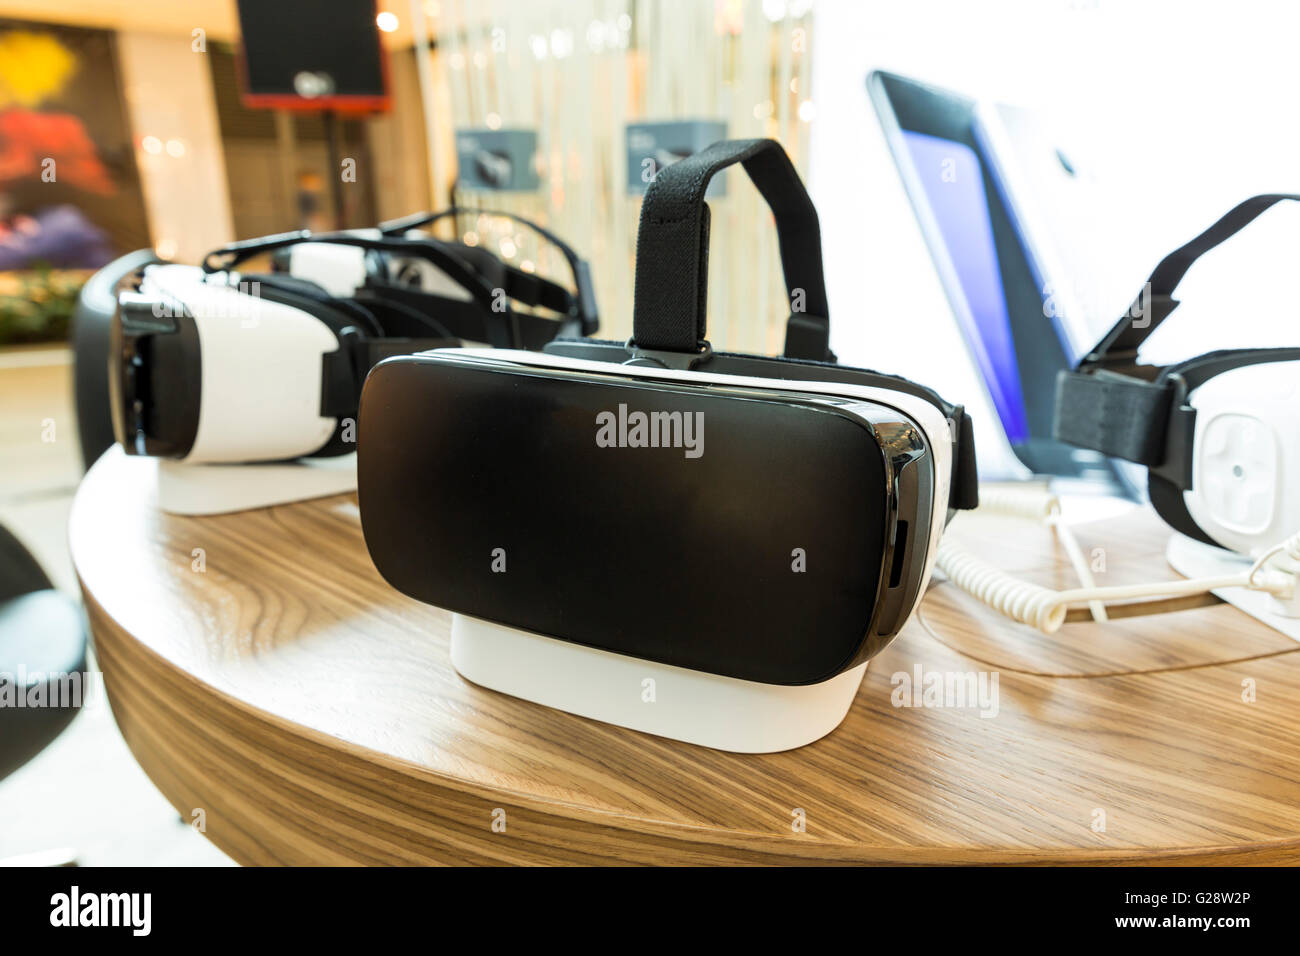 La réalité virtuelle (RV) Casques (verres) sur une table. Multimédia immersive VR est simulé par ordinateur ou la réalité - un ordinateur techno Banque D'Images